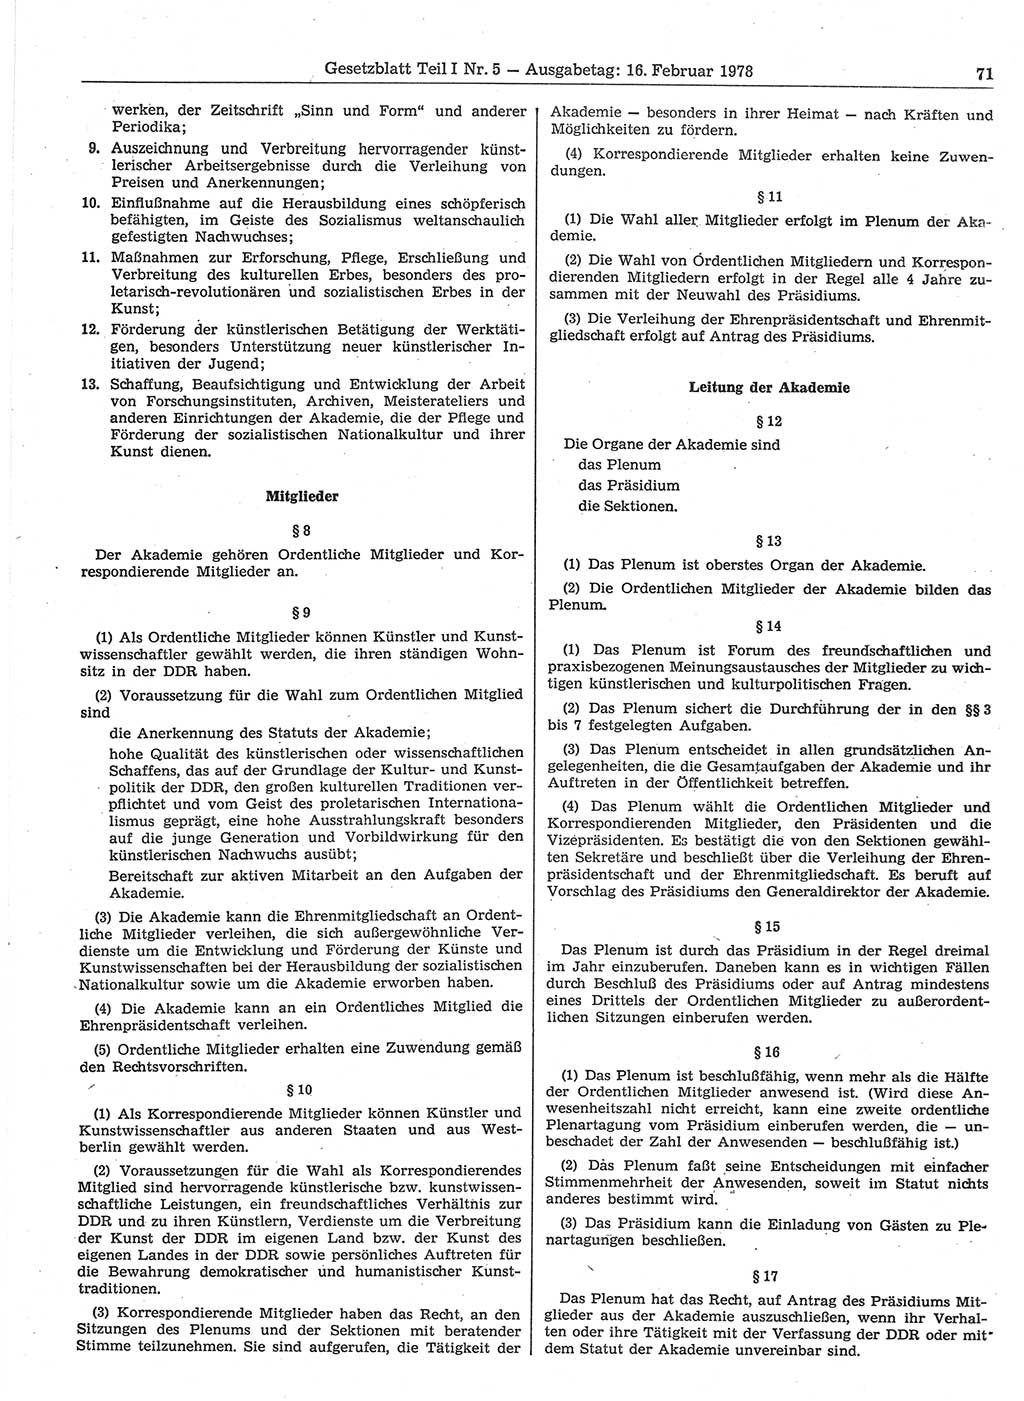 Gesetzblatt (GBl.) der Deutschen Demokratischen Republik (DDR) Teil Ⅰ 1978, Seite 71 (GBl. DDR Ⅰ 1978, S. 71)